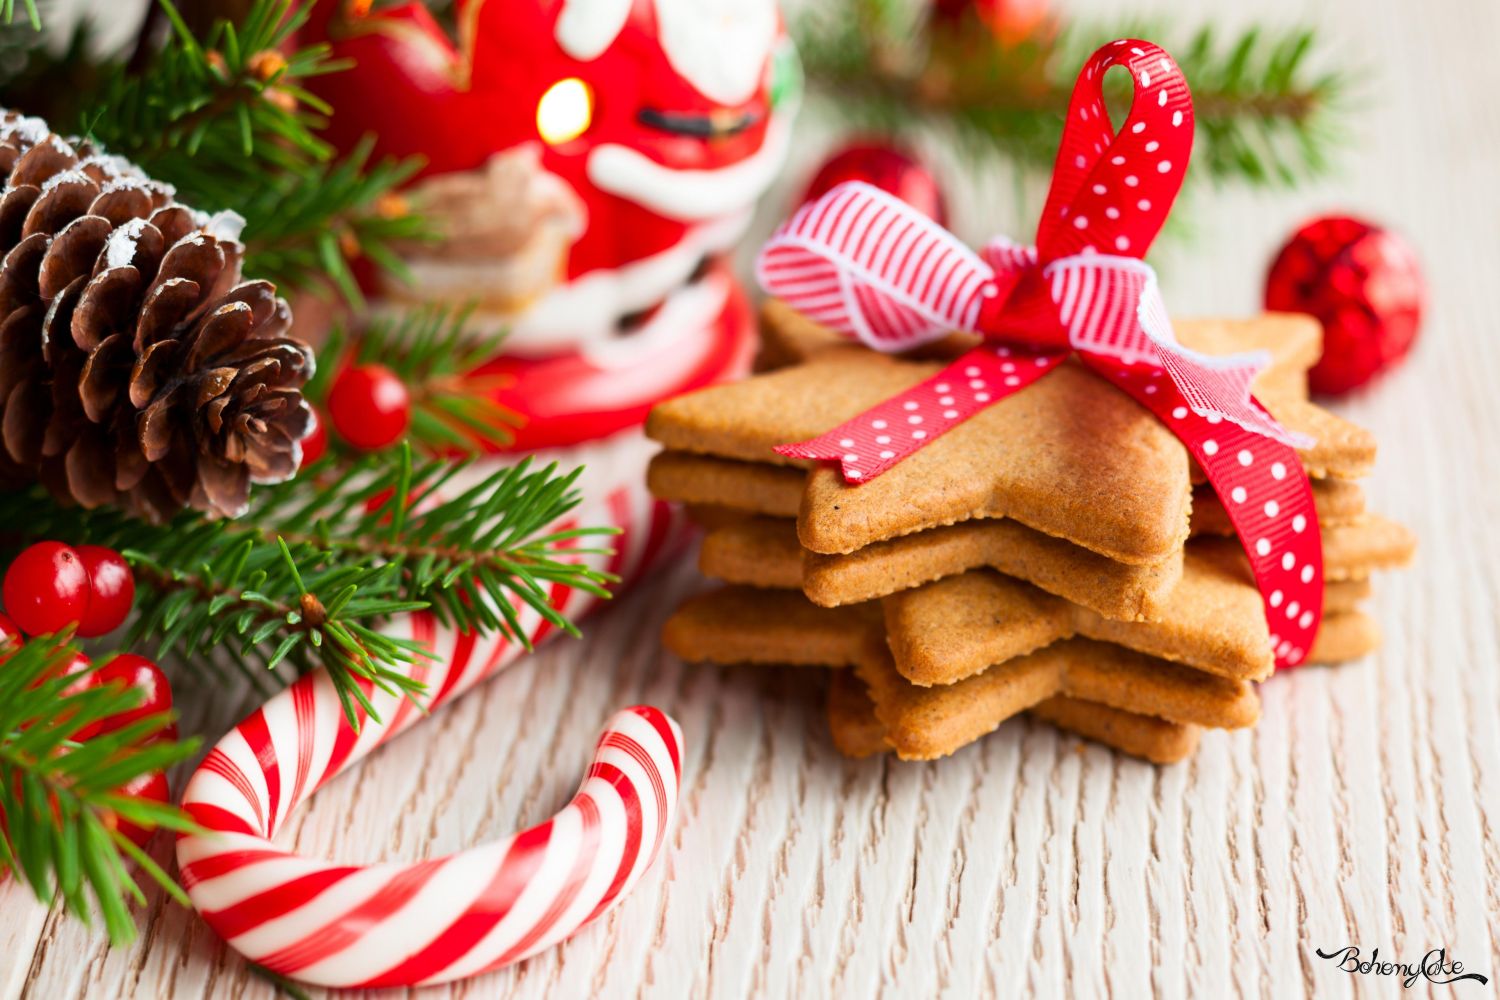 Le Migliori Ricette Di Natale.Le Migliori Ricette Di Biscotti Da Regalare A Natale Bohemycake